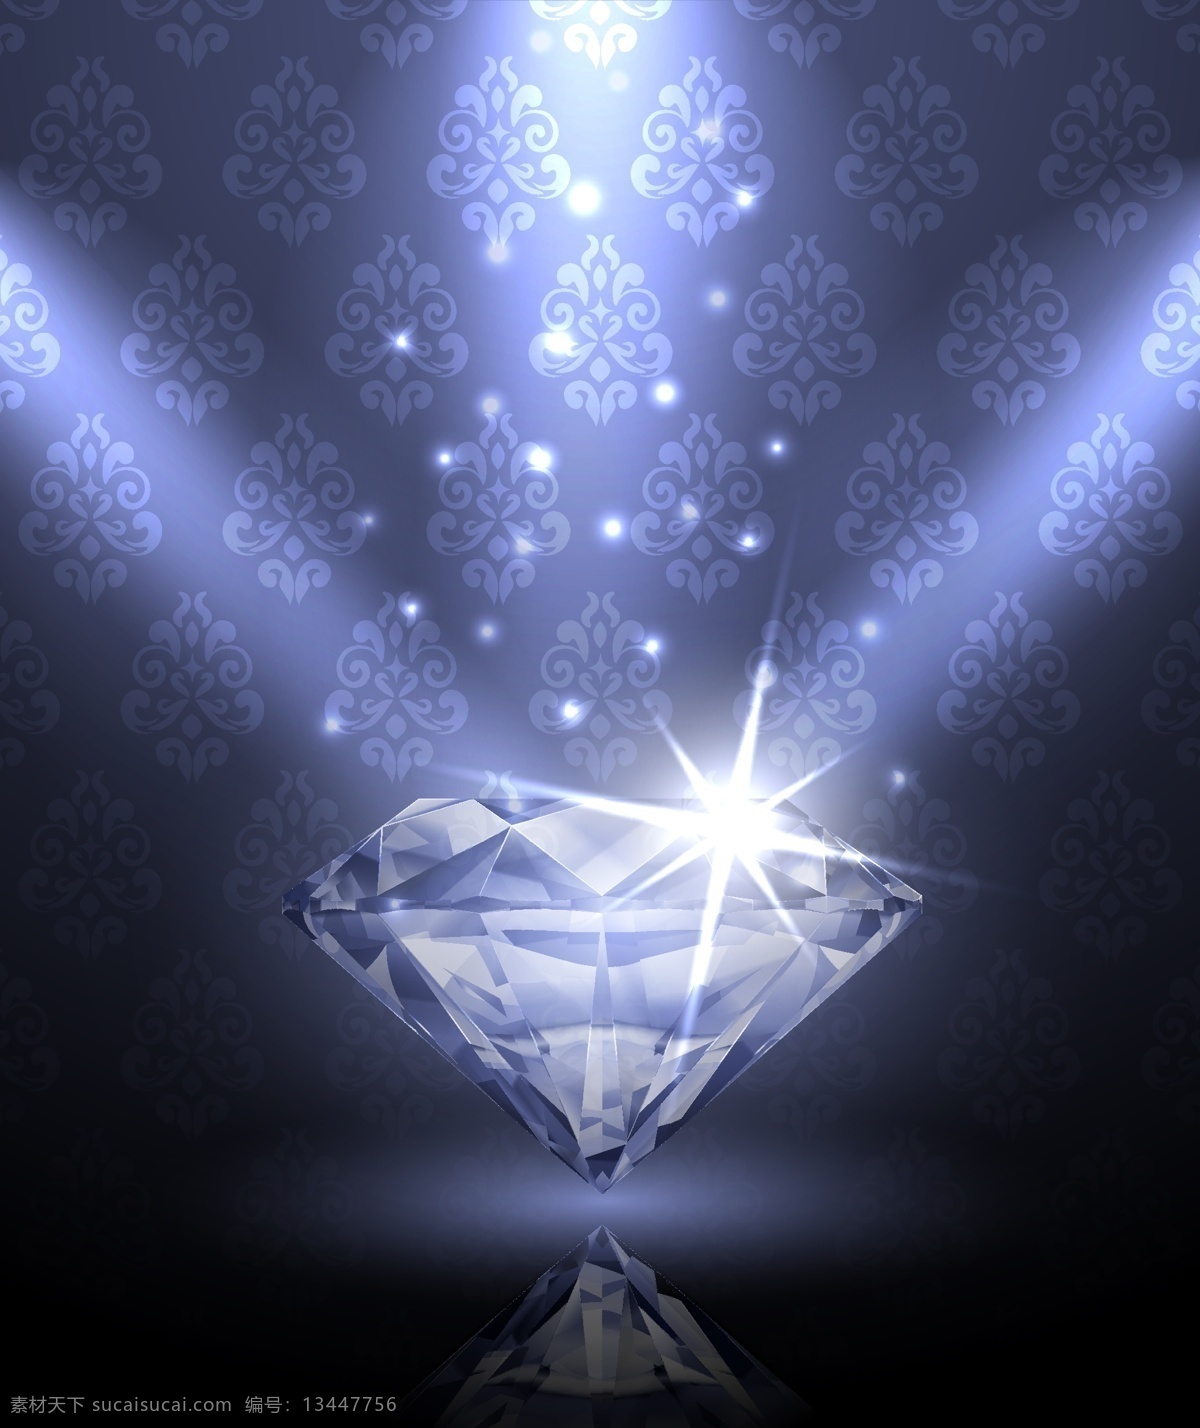 晶莹剔透 钻石 珠宝 矢量 水晶 质感 高贵 水晶鞋 logo 宝石 珠宝首饰 钻石背景 矢量素材